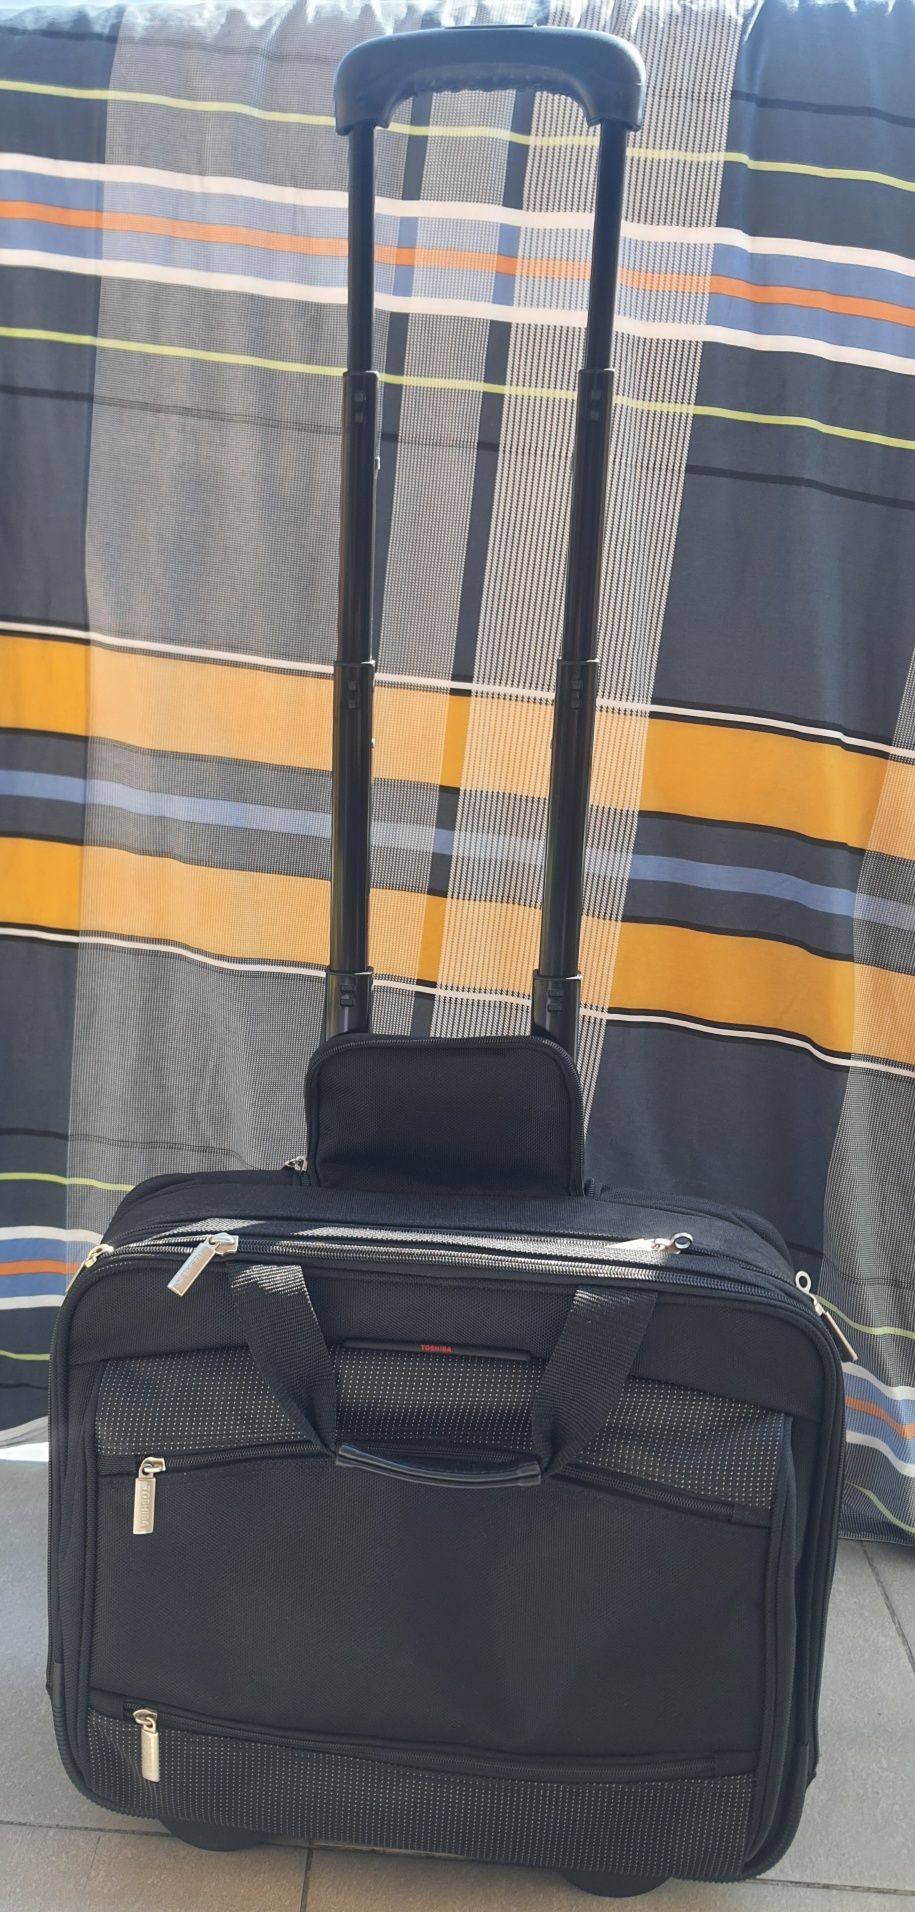 Toshiba pilotka wózek torba businessowa na kółkach